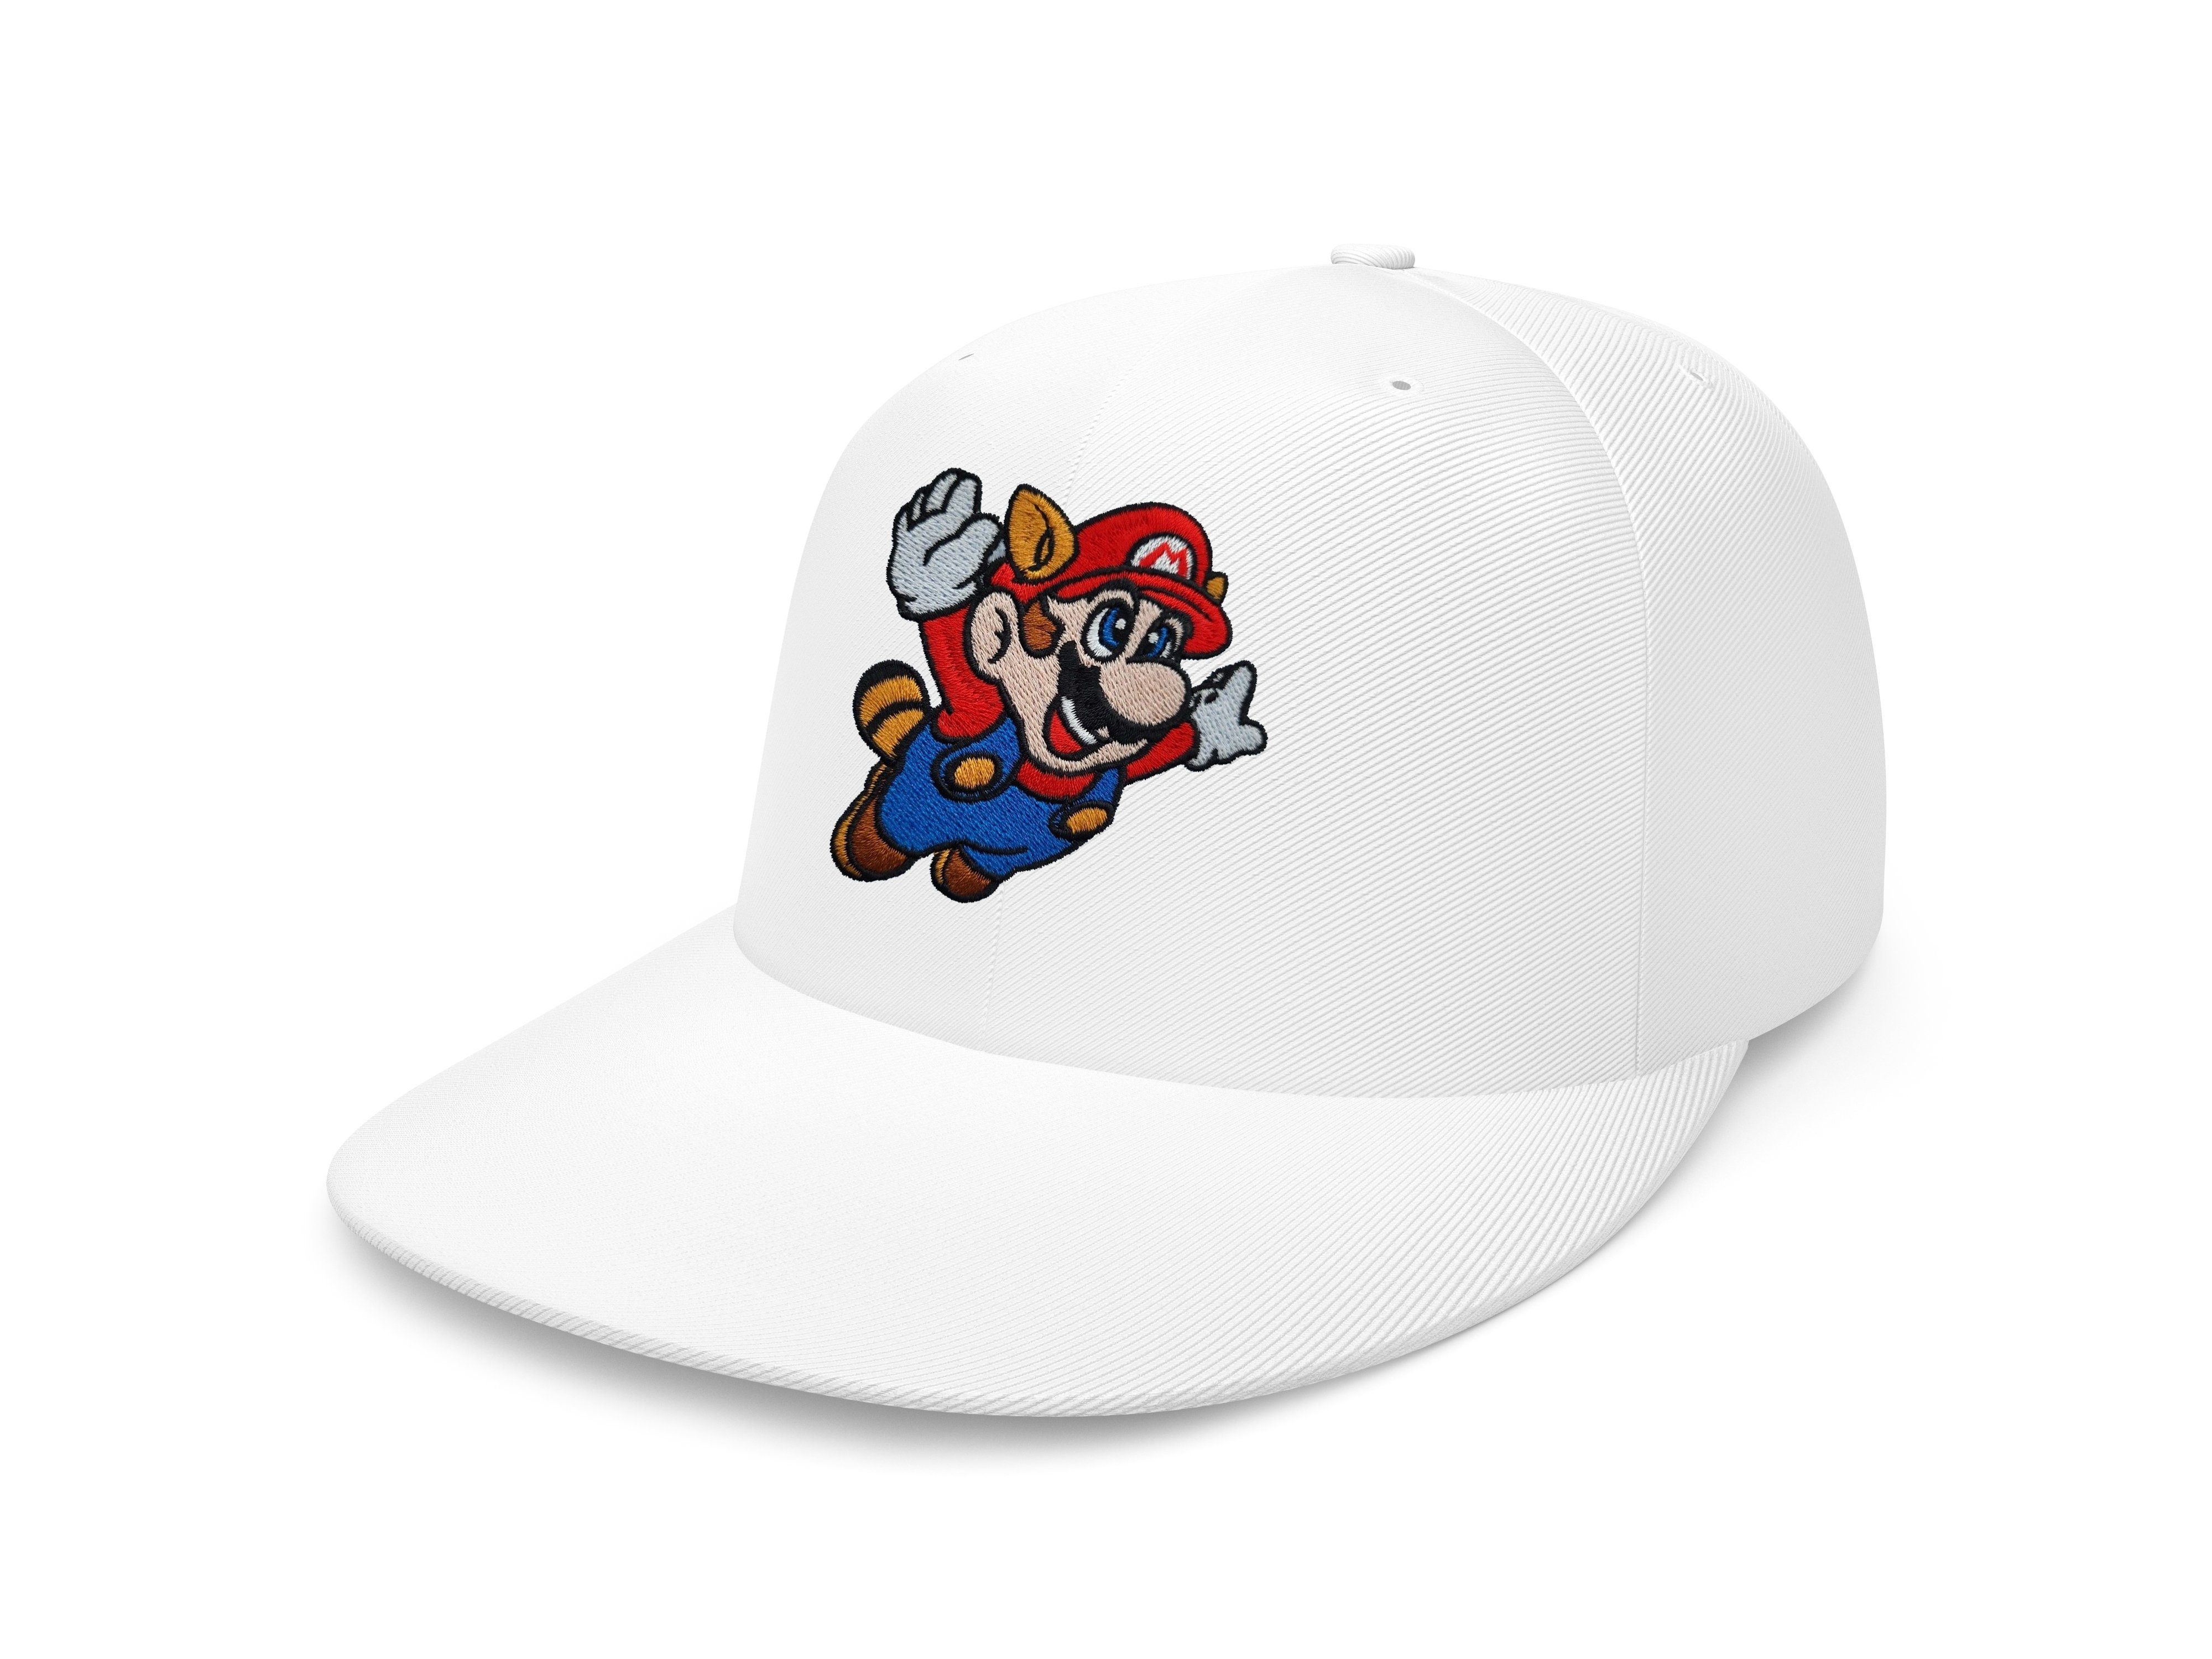 Erwachsene Unisex Snapback Baseball & Mario Brownie Fligh Patch Luigi Stick Cap Weiß Blondie Nintendo